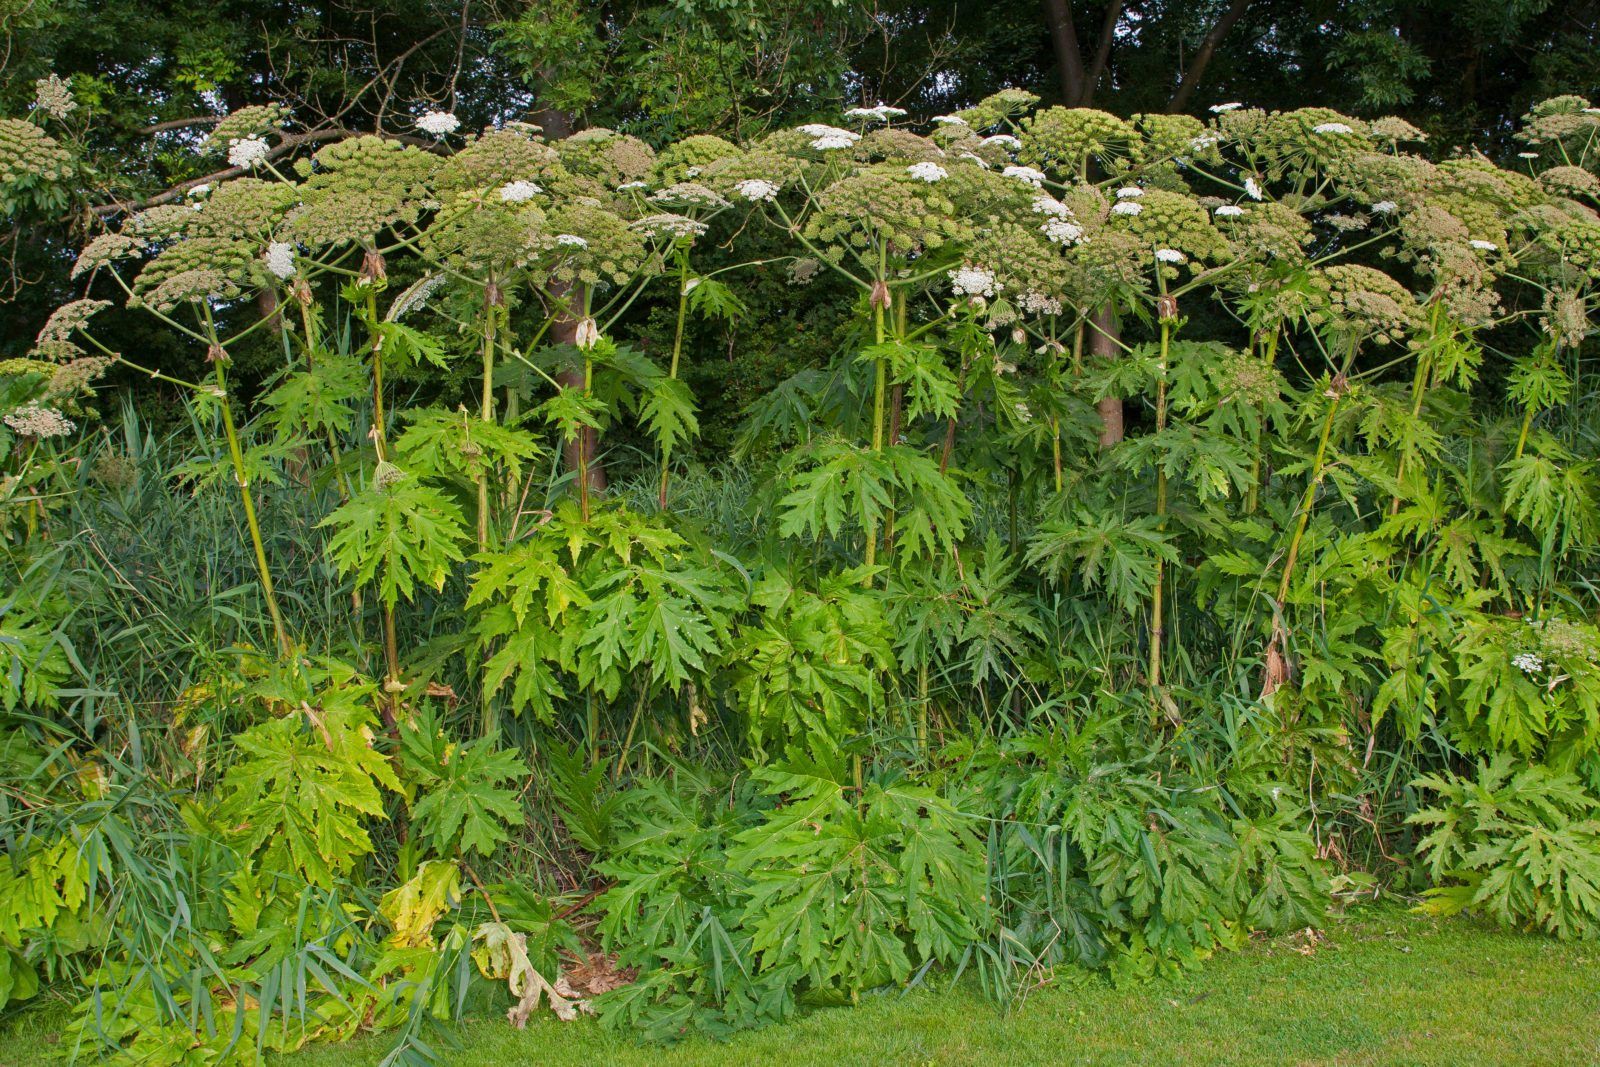 Giant Hogweed, invasive plant species